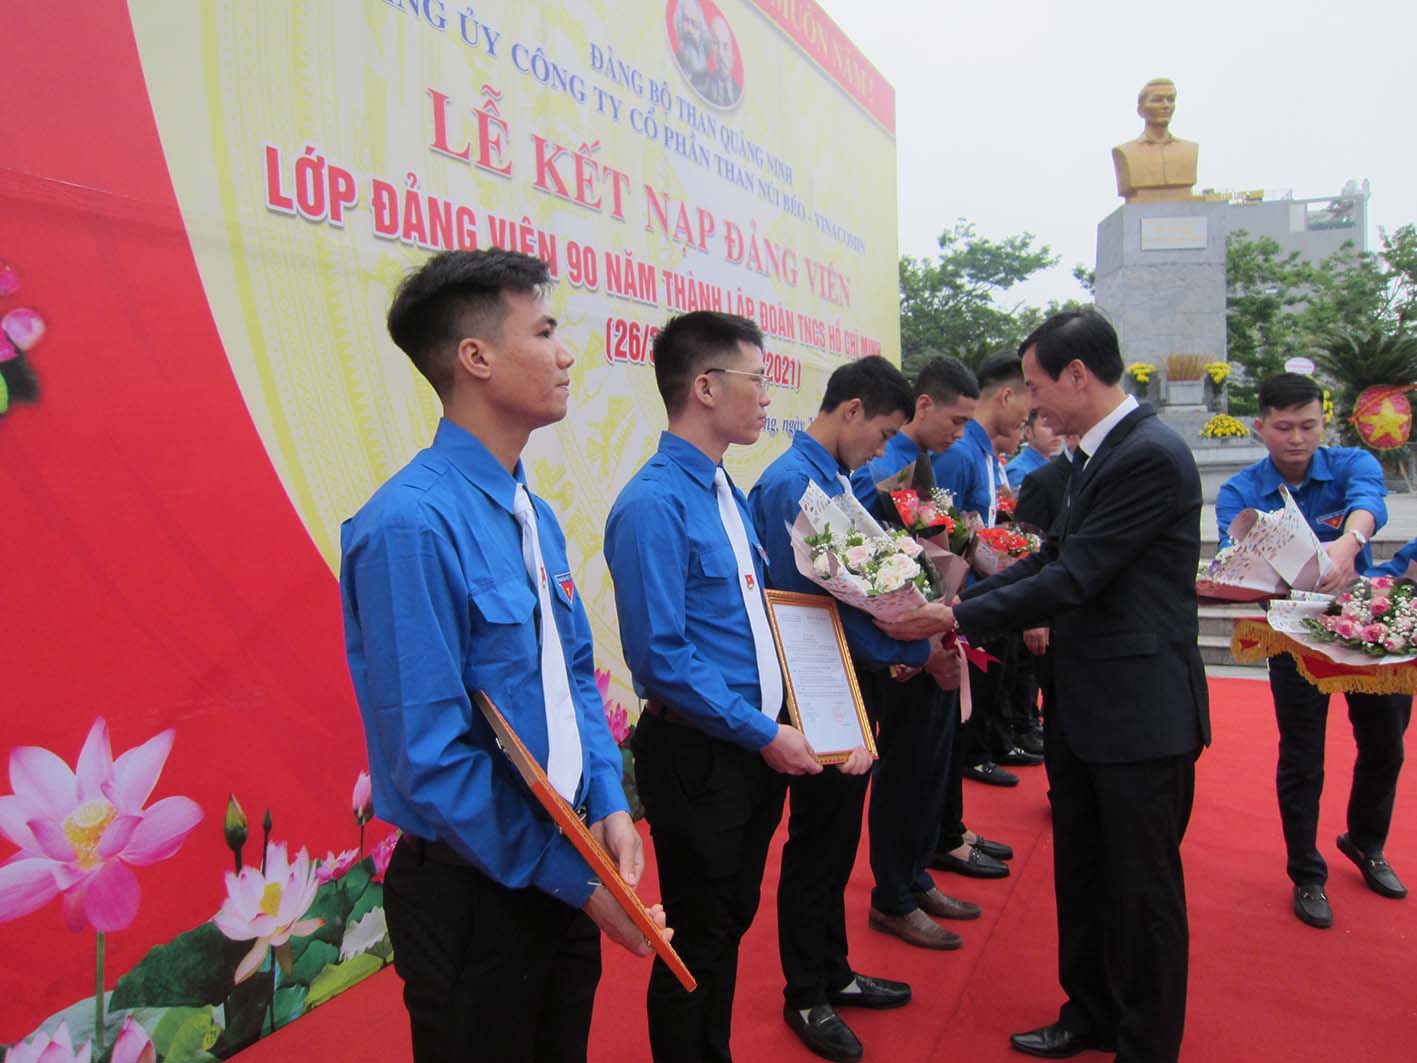 Tổ chức lễ kết nạp lớp Đảng viên 90 năm thành lập ĐTNCS Hồ Chí Minh